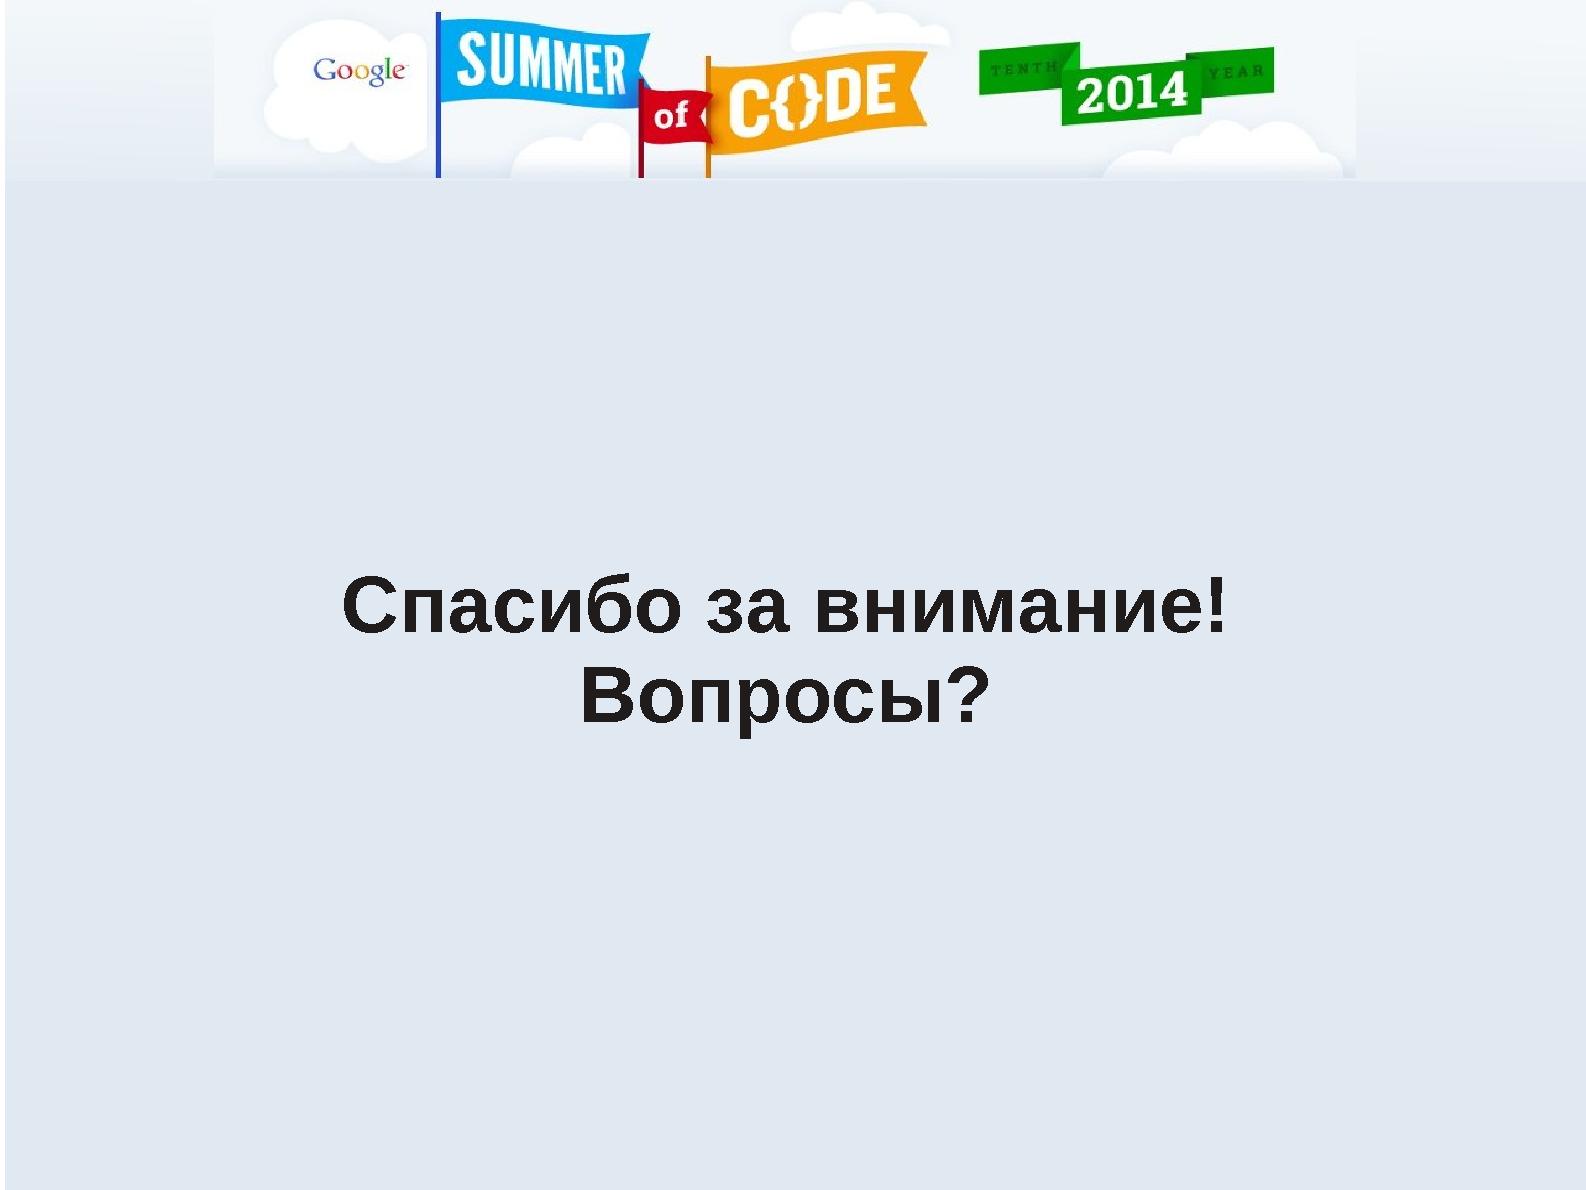 Файл:Программа Google Summer of Code как способ привлечения студентов к разработке СПО проектов (Дмитрий Казаков, OSEDUCONF-2014).pdf